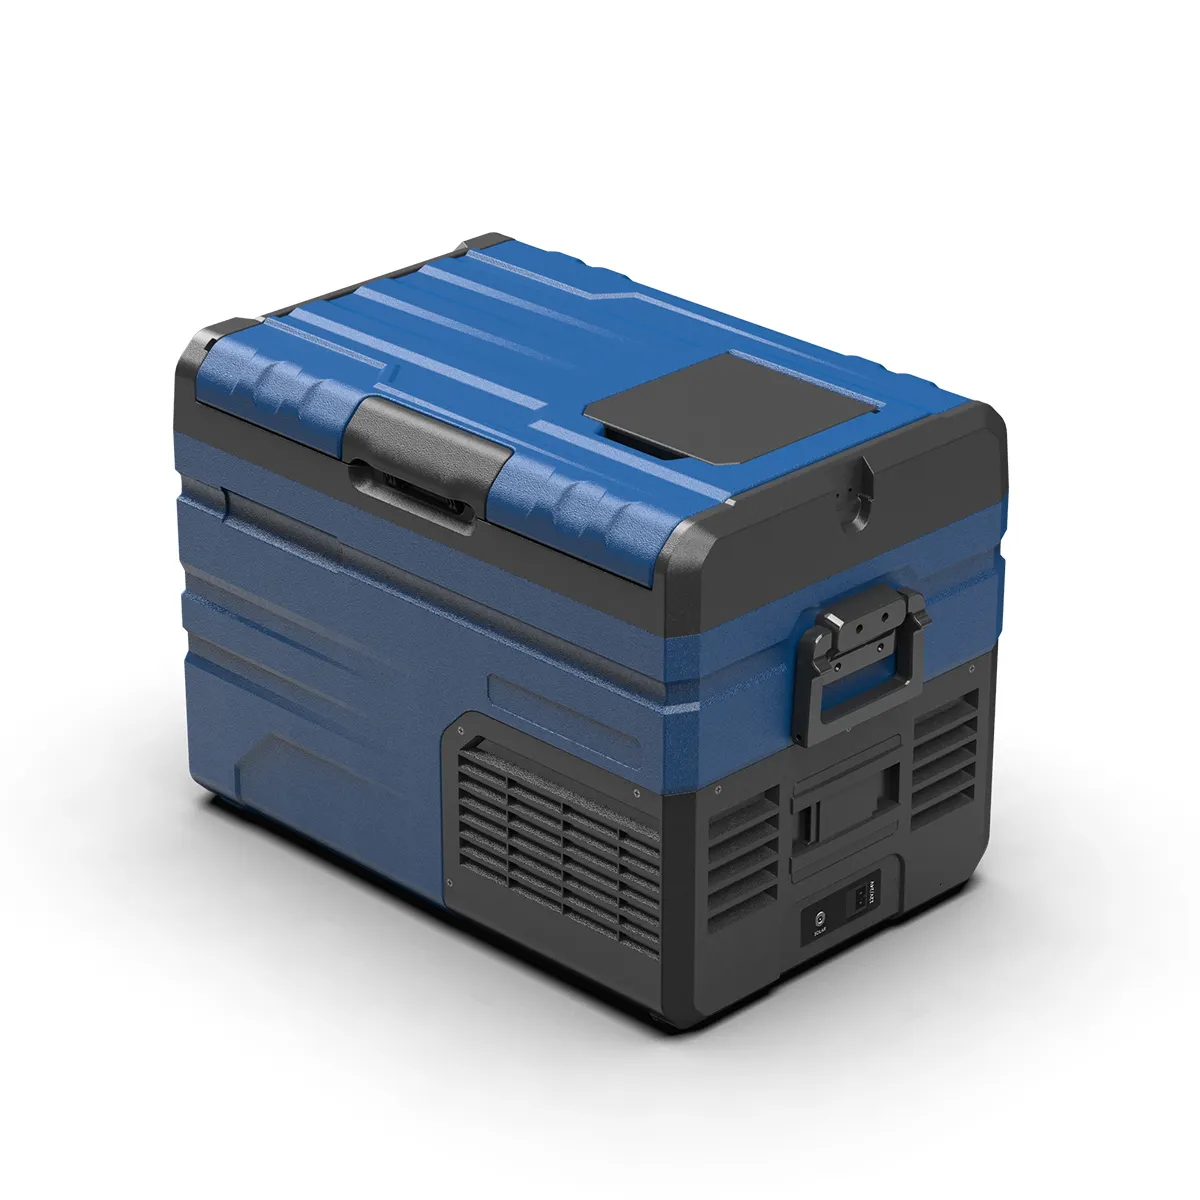 Alpicool TB35 compressore frigo solare 37.5L Dual zone 12V batteria frigo portatile campeggio frigorifero auto casa doppio uso